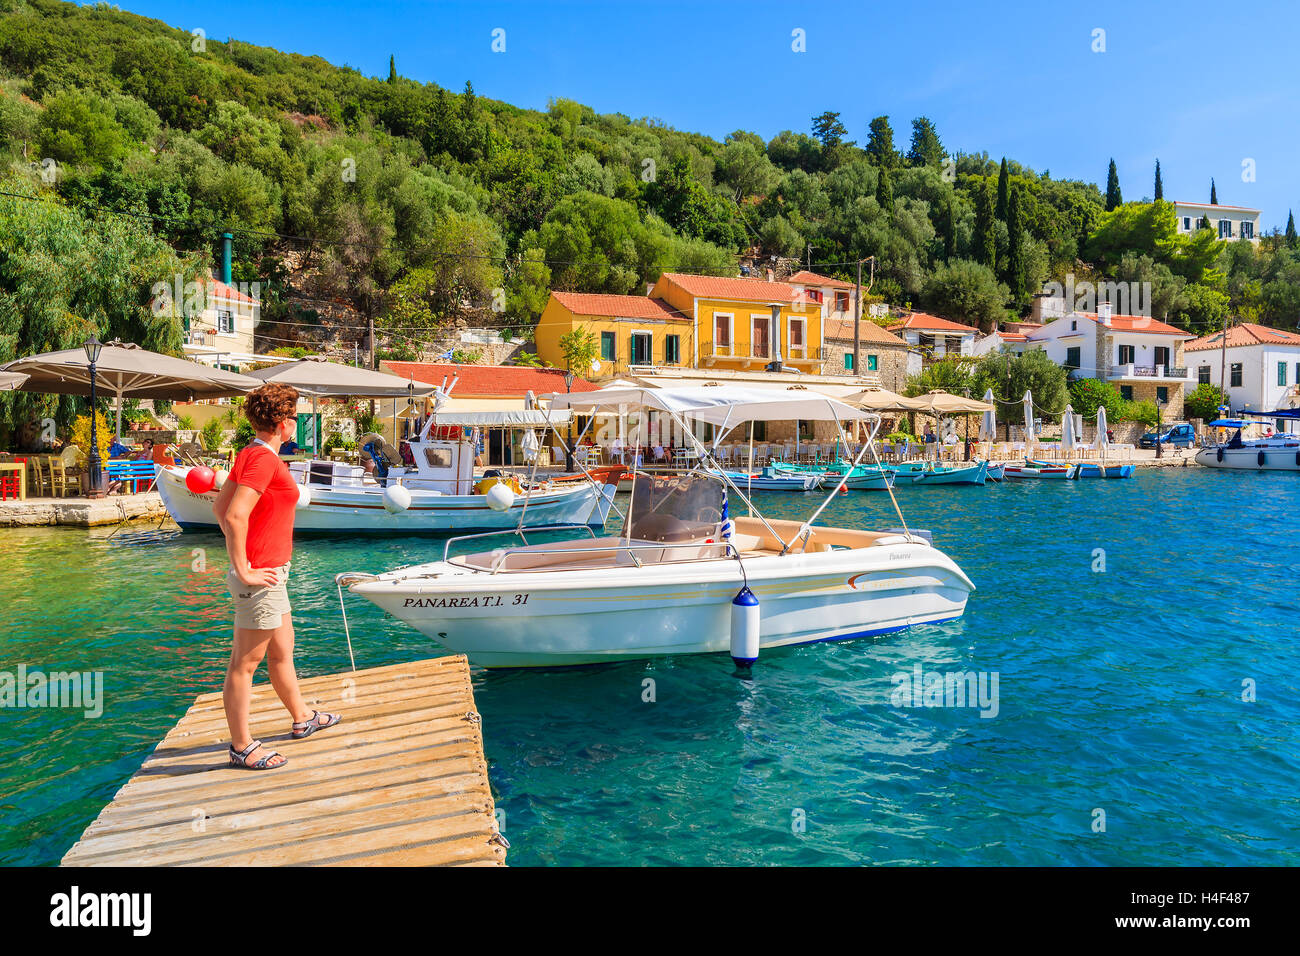 KIONI PORTA, Itaca isola - Sep 19, 2014: il giovane turista in piedi sul molo di legno in Kioni porta. La Grecia è molto popolare meta di vacanza in Europa. Foto Stock